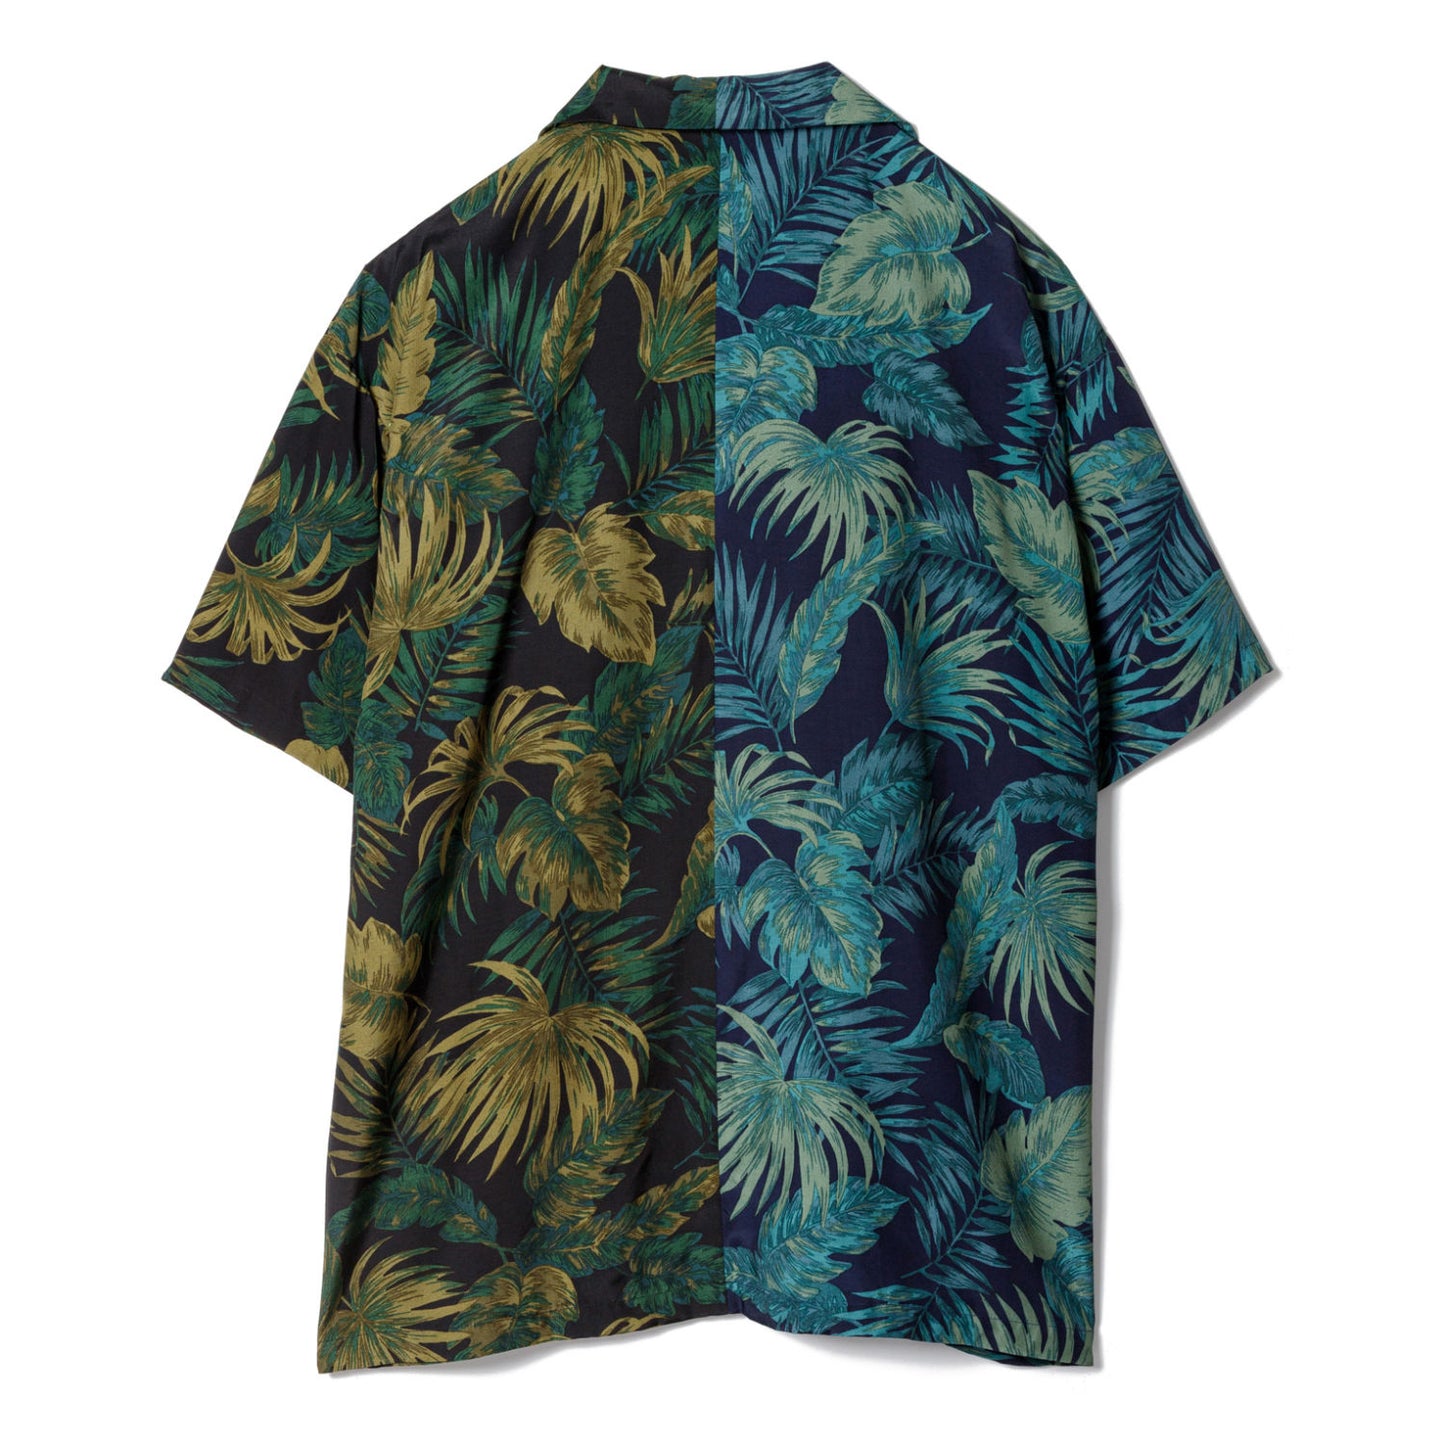 SANDINISTA ”Aloha Panel Shirt” / サンディニスタ"アロハパネルシャツ"